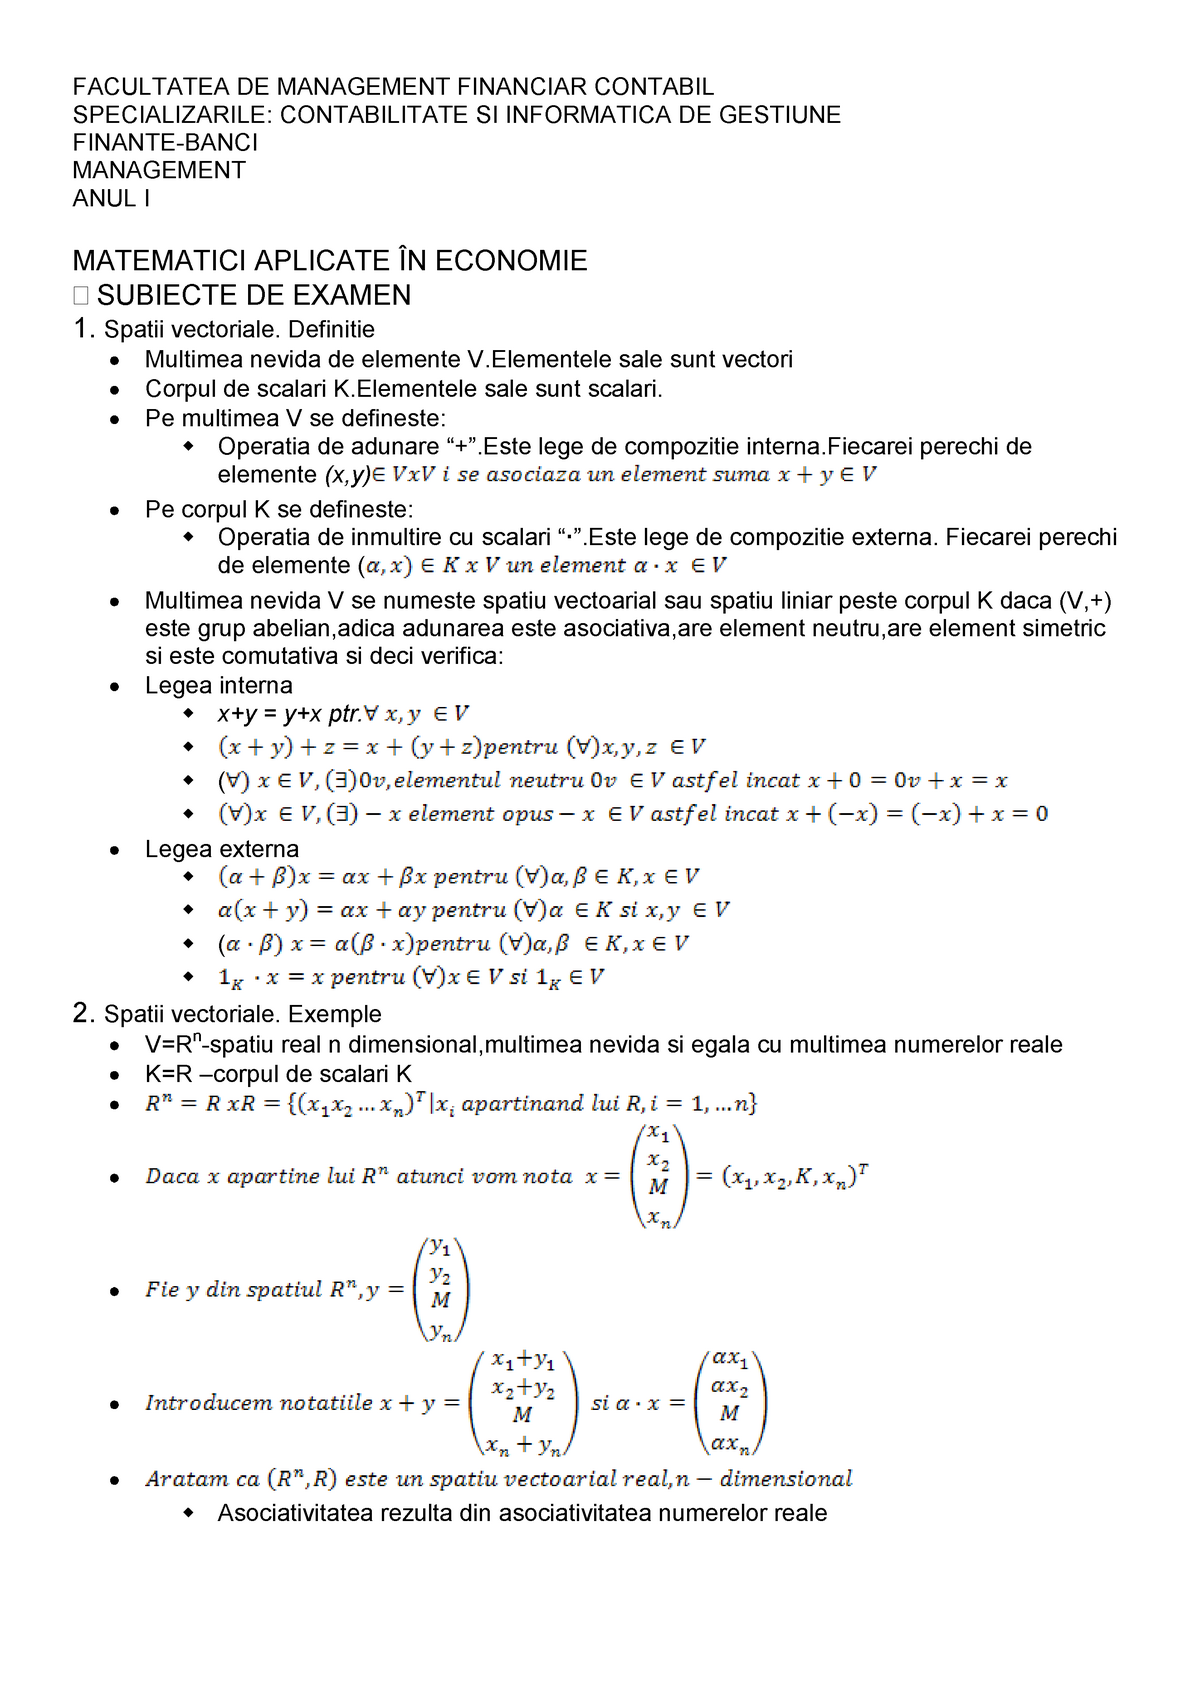 Sticky teacher Theseus 172190089 Matematici aplicate in economie Subiecte si aplicatii pdf -  FACULTATEA DE MANAGEMENT - StuDocu